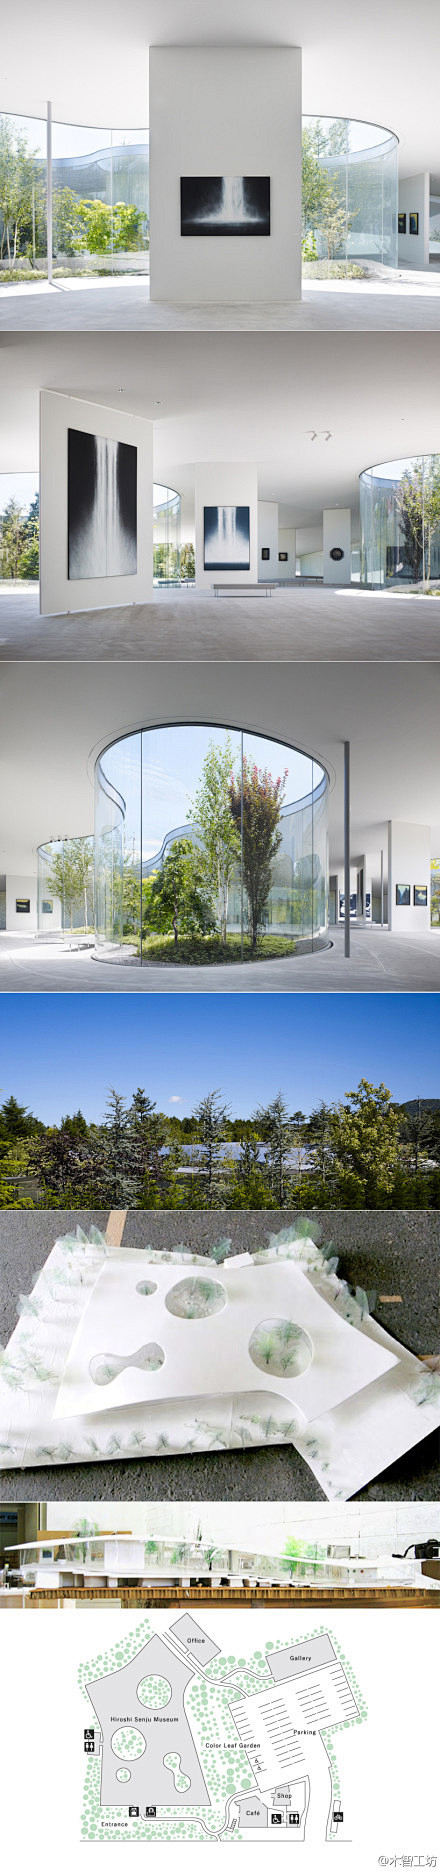 日本建筑师西泽立卫与艺术家千住博共同设计完成的轻井泽千住博博物馆